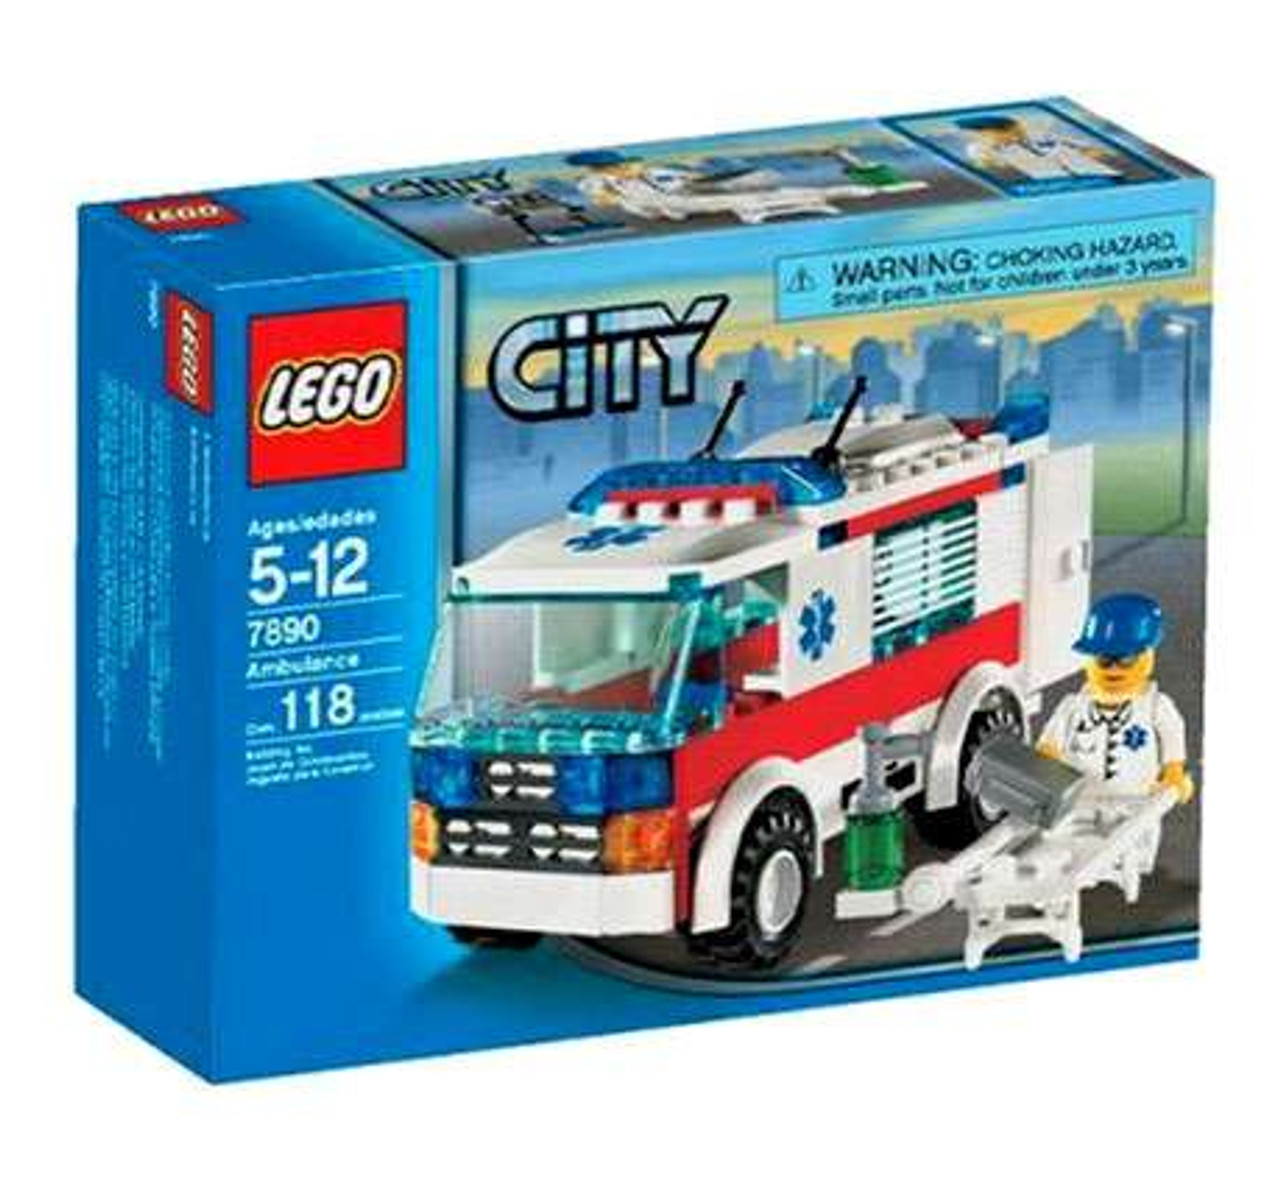 Download LEGO City Ambulance Set 7890 Damaged Package - ToyWiz